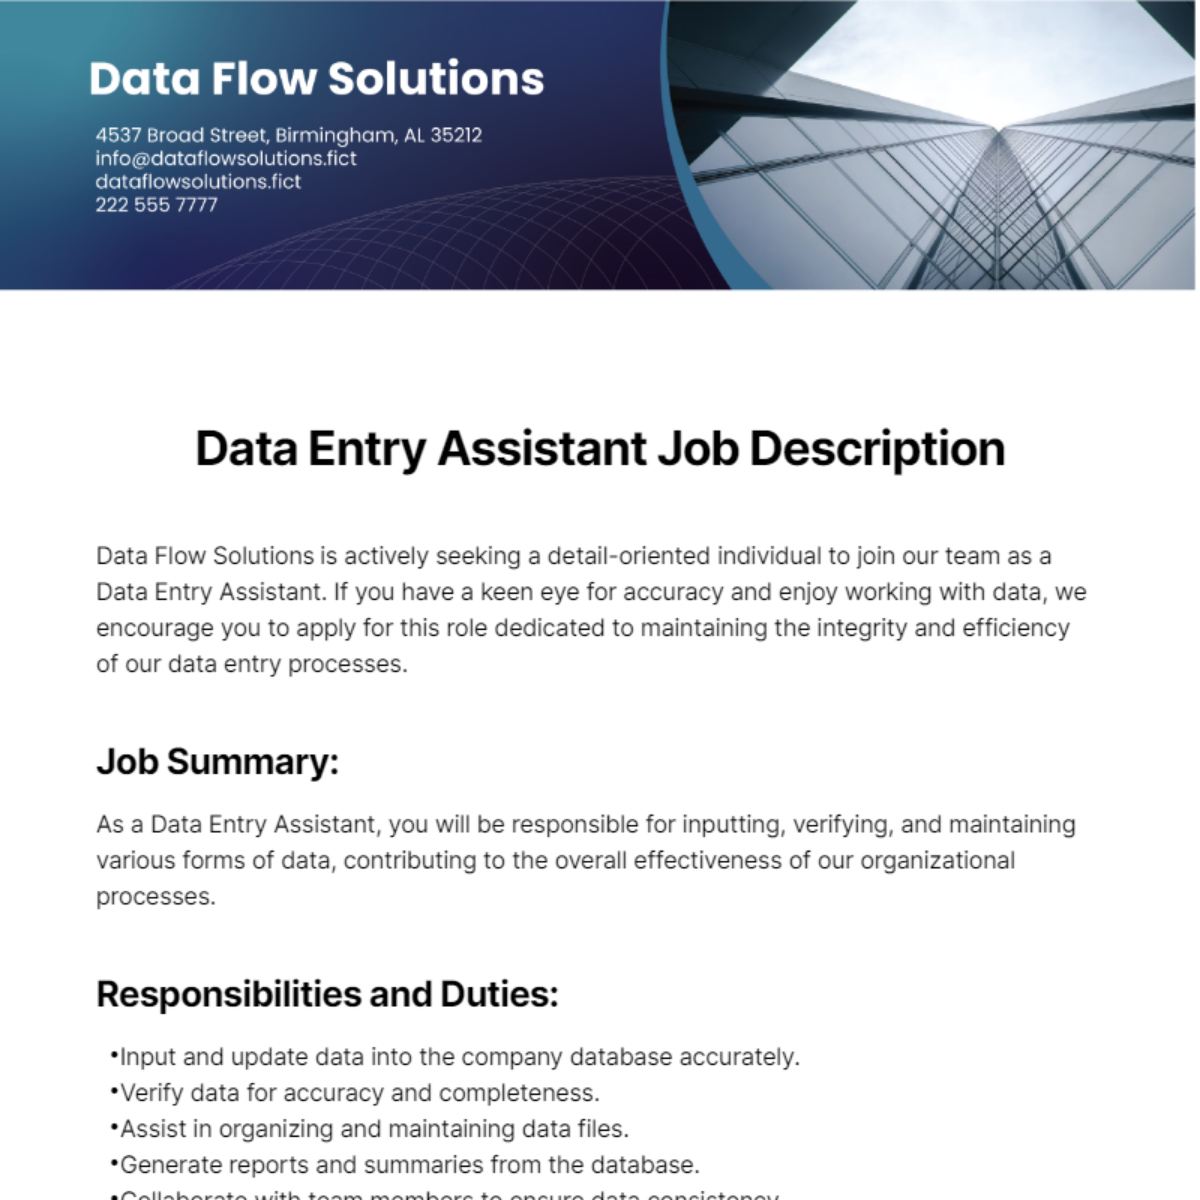 Data Entry Assistant Job Description Template